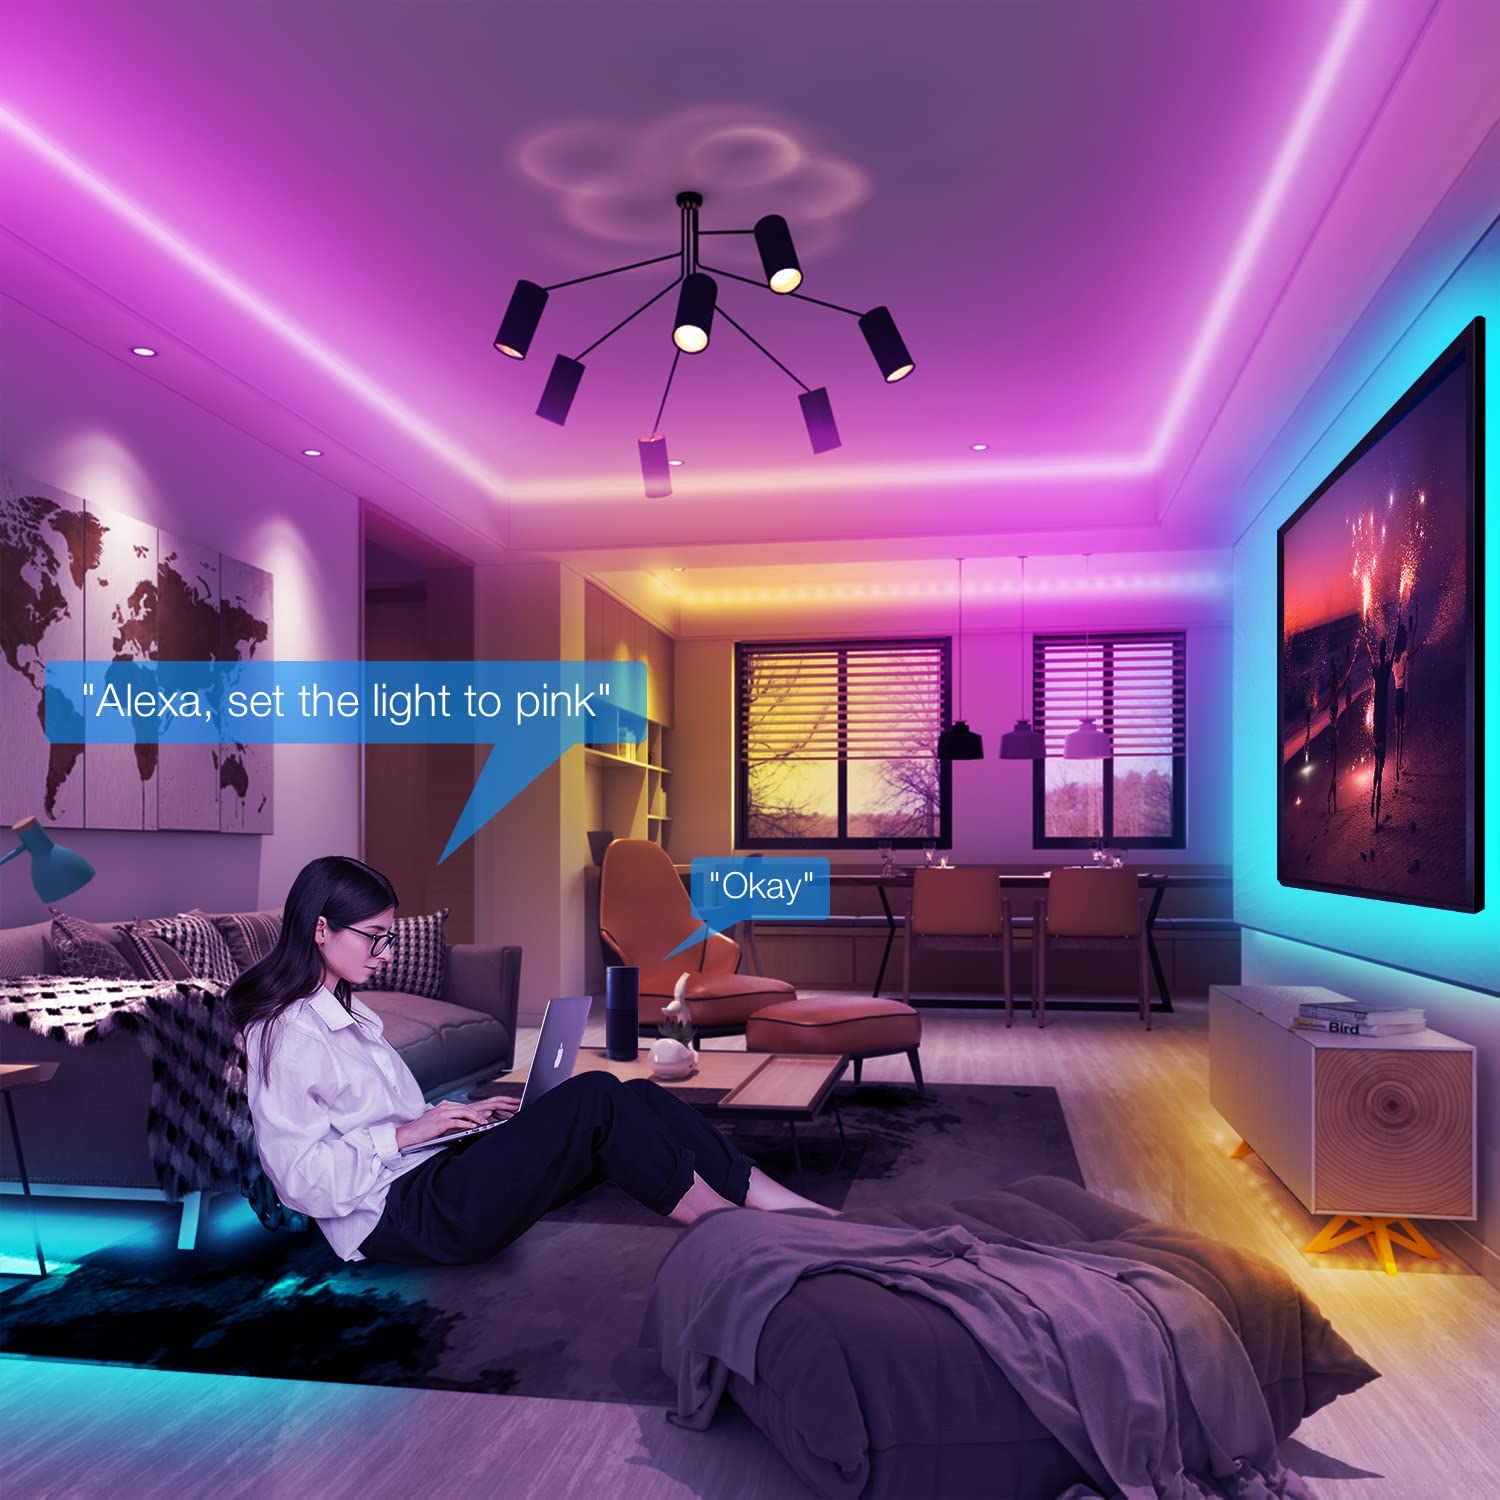 Tira de luces LED de 100 pies compatible con Alexa (conexión directa), luces LED inteligentes para dormitorio, sincronización de cambio de color RGB con música, control remoto de 44 teclas